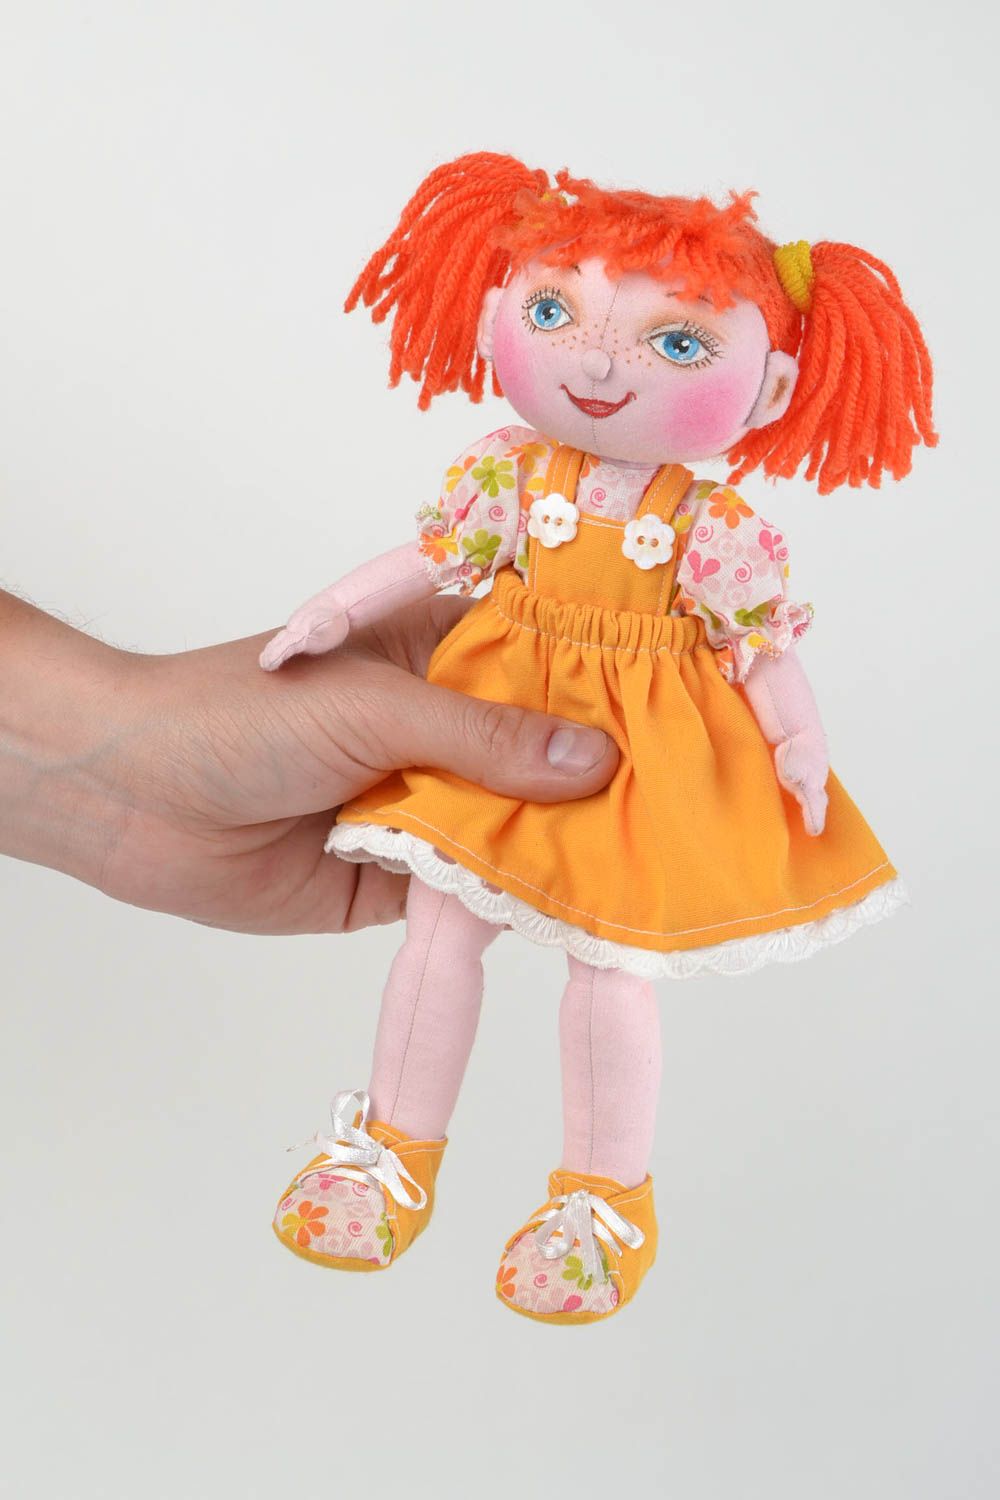 Кукла для интерьера и детей тканевая мягкая игрушка ручной работы Ульяна фото 2